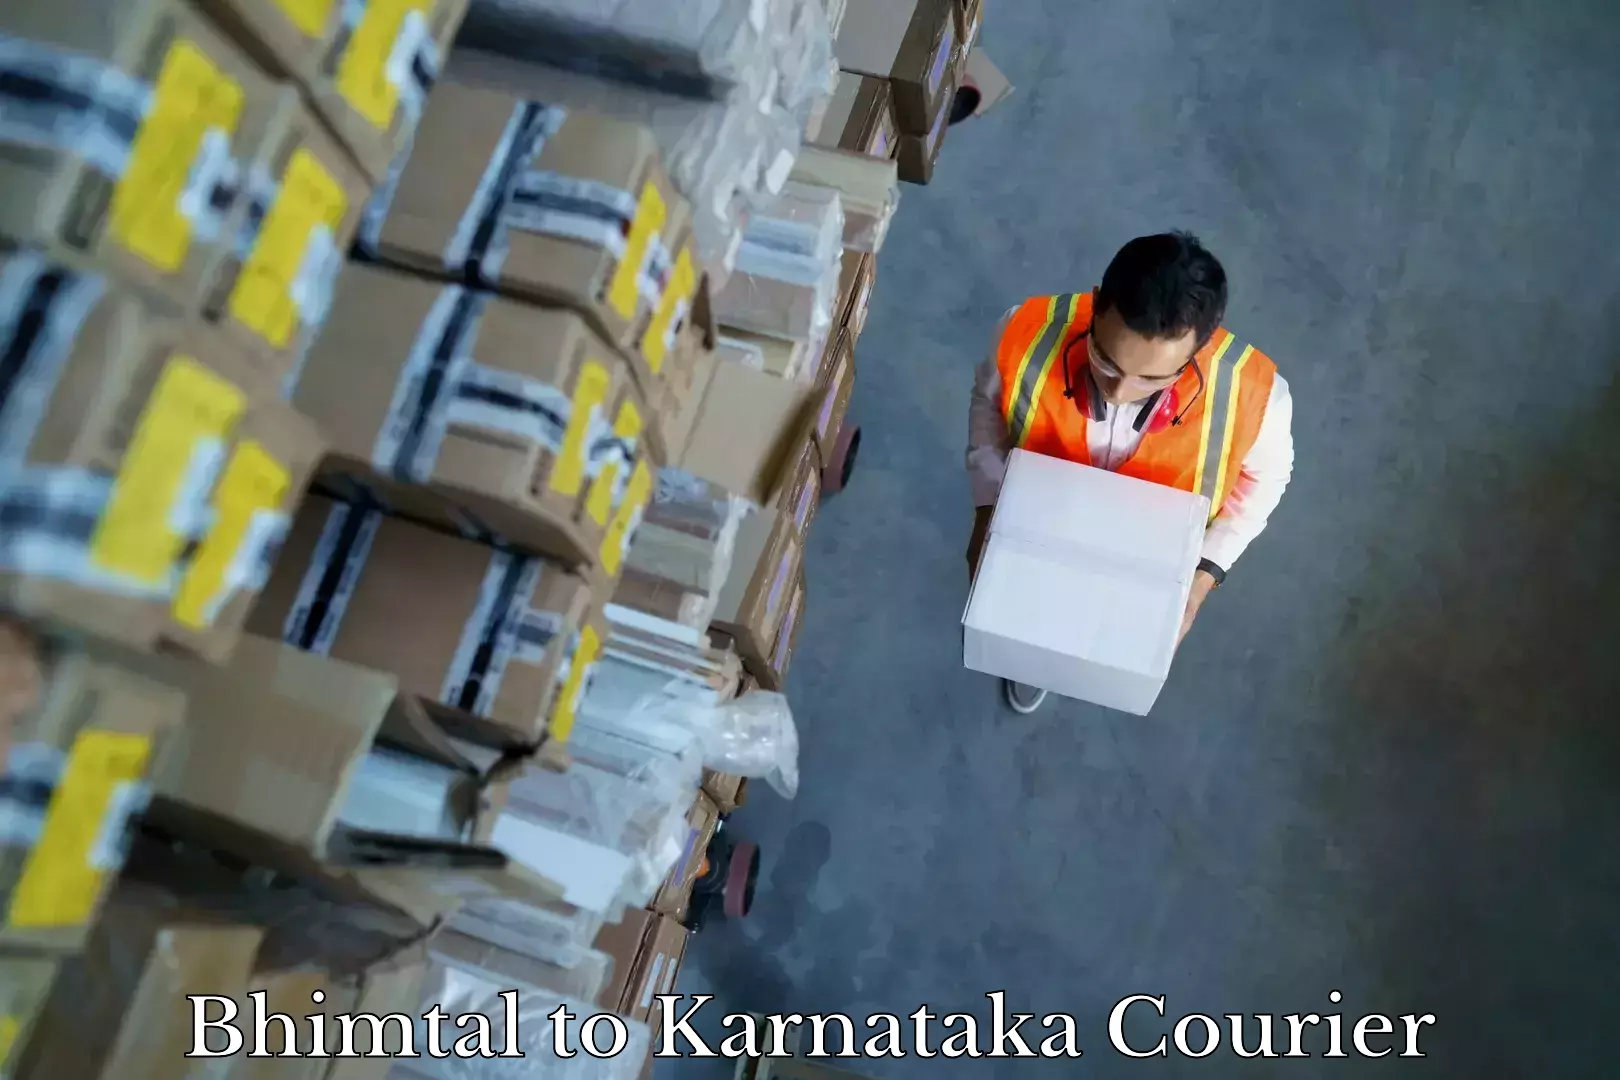 Furniture moving assistance Bhimtal to Karnataka